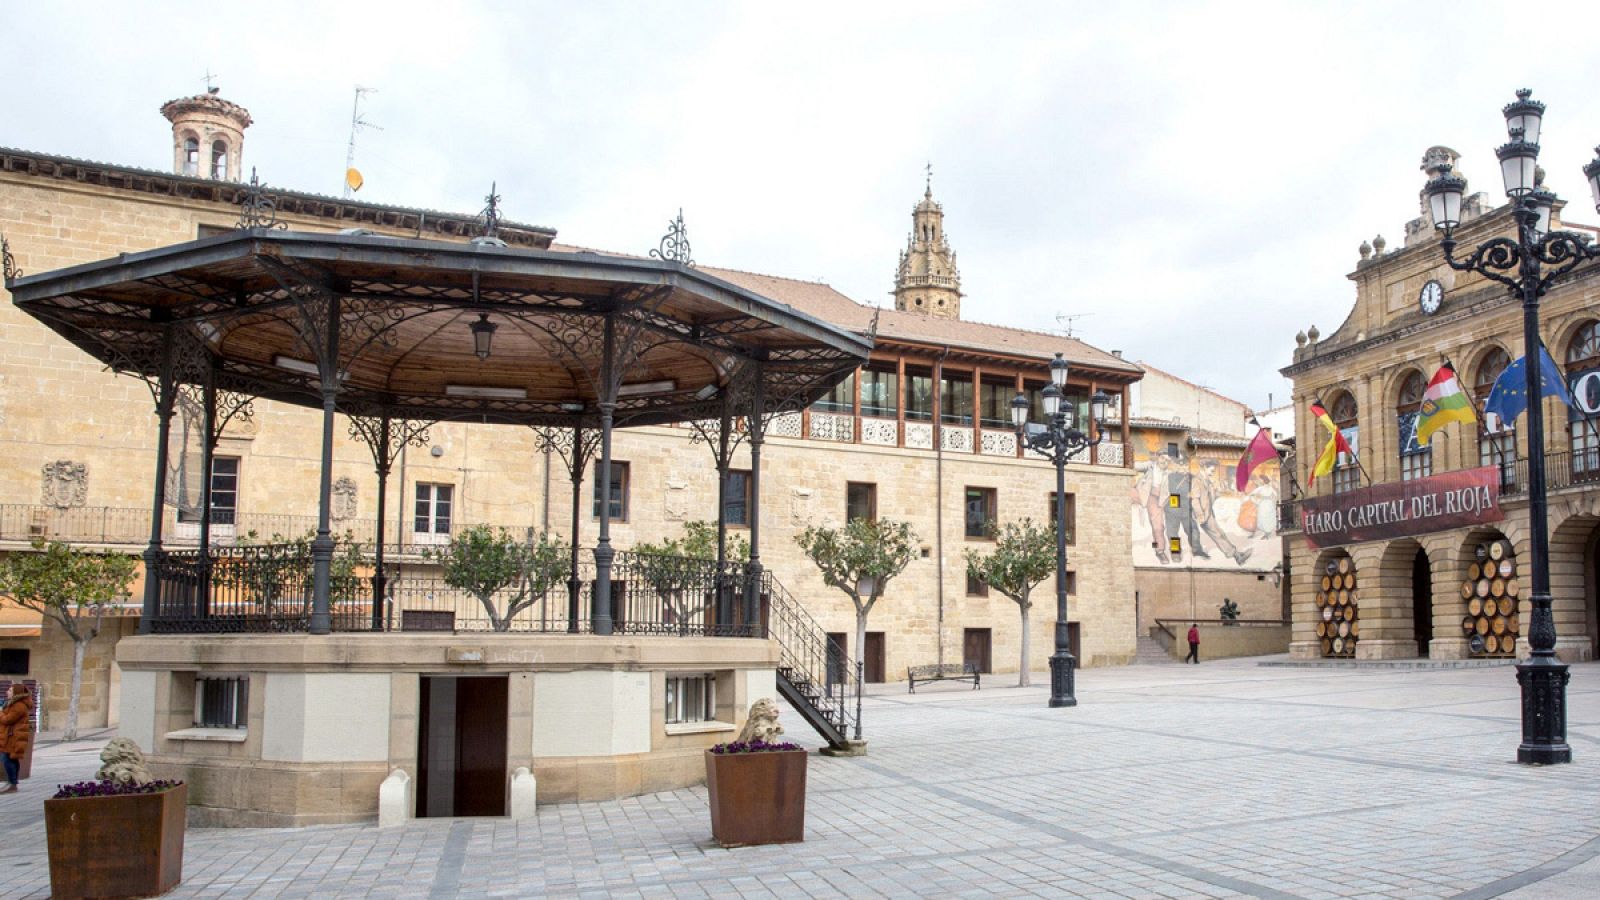   Vista del Ayuntamiento de la ciudad riojana de Haro (La Rioja), donde se concentra una gran parte de los casos riojanos de COVID-19.